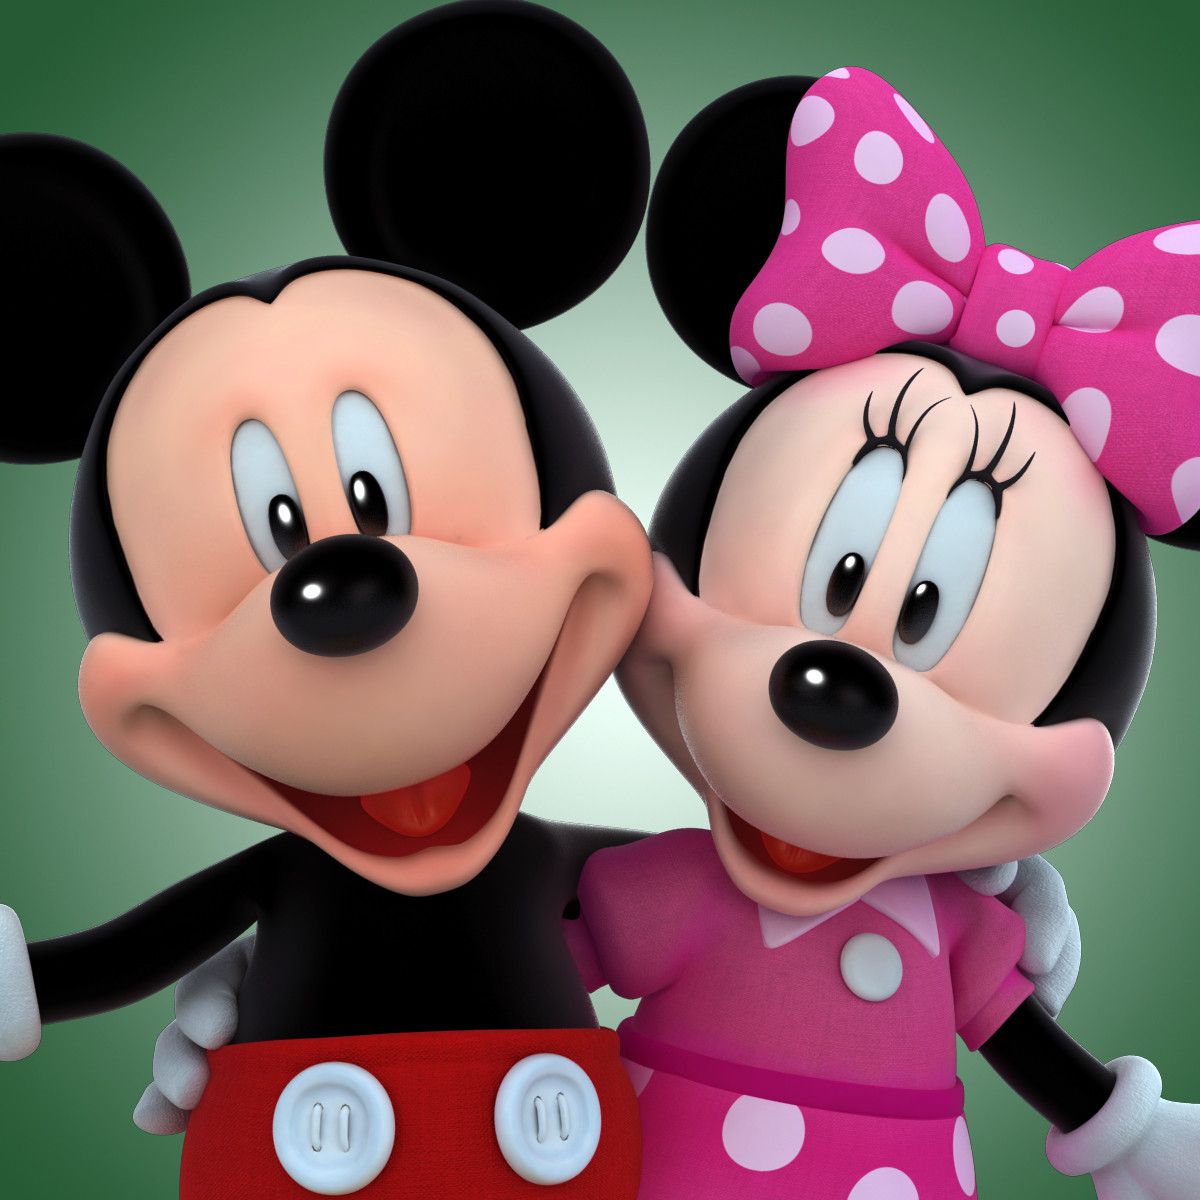 Wallpaper Mickey Mouse 3d - KibrisPDR